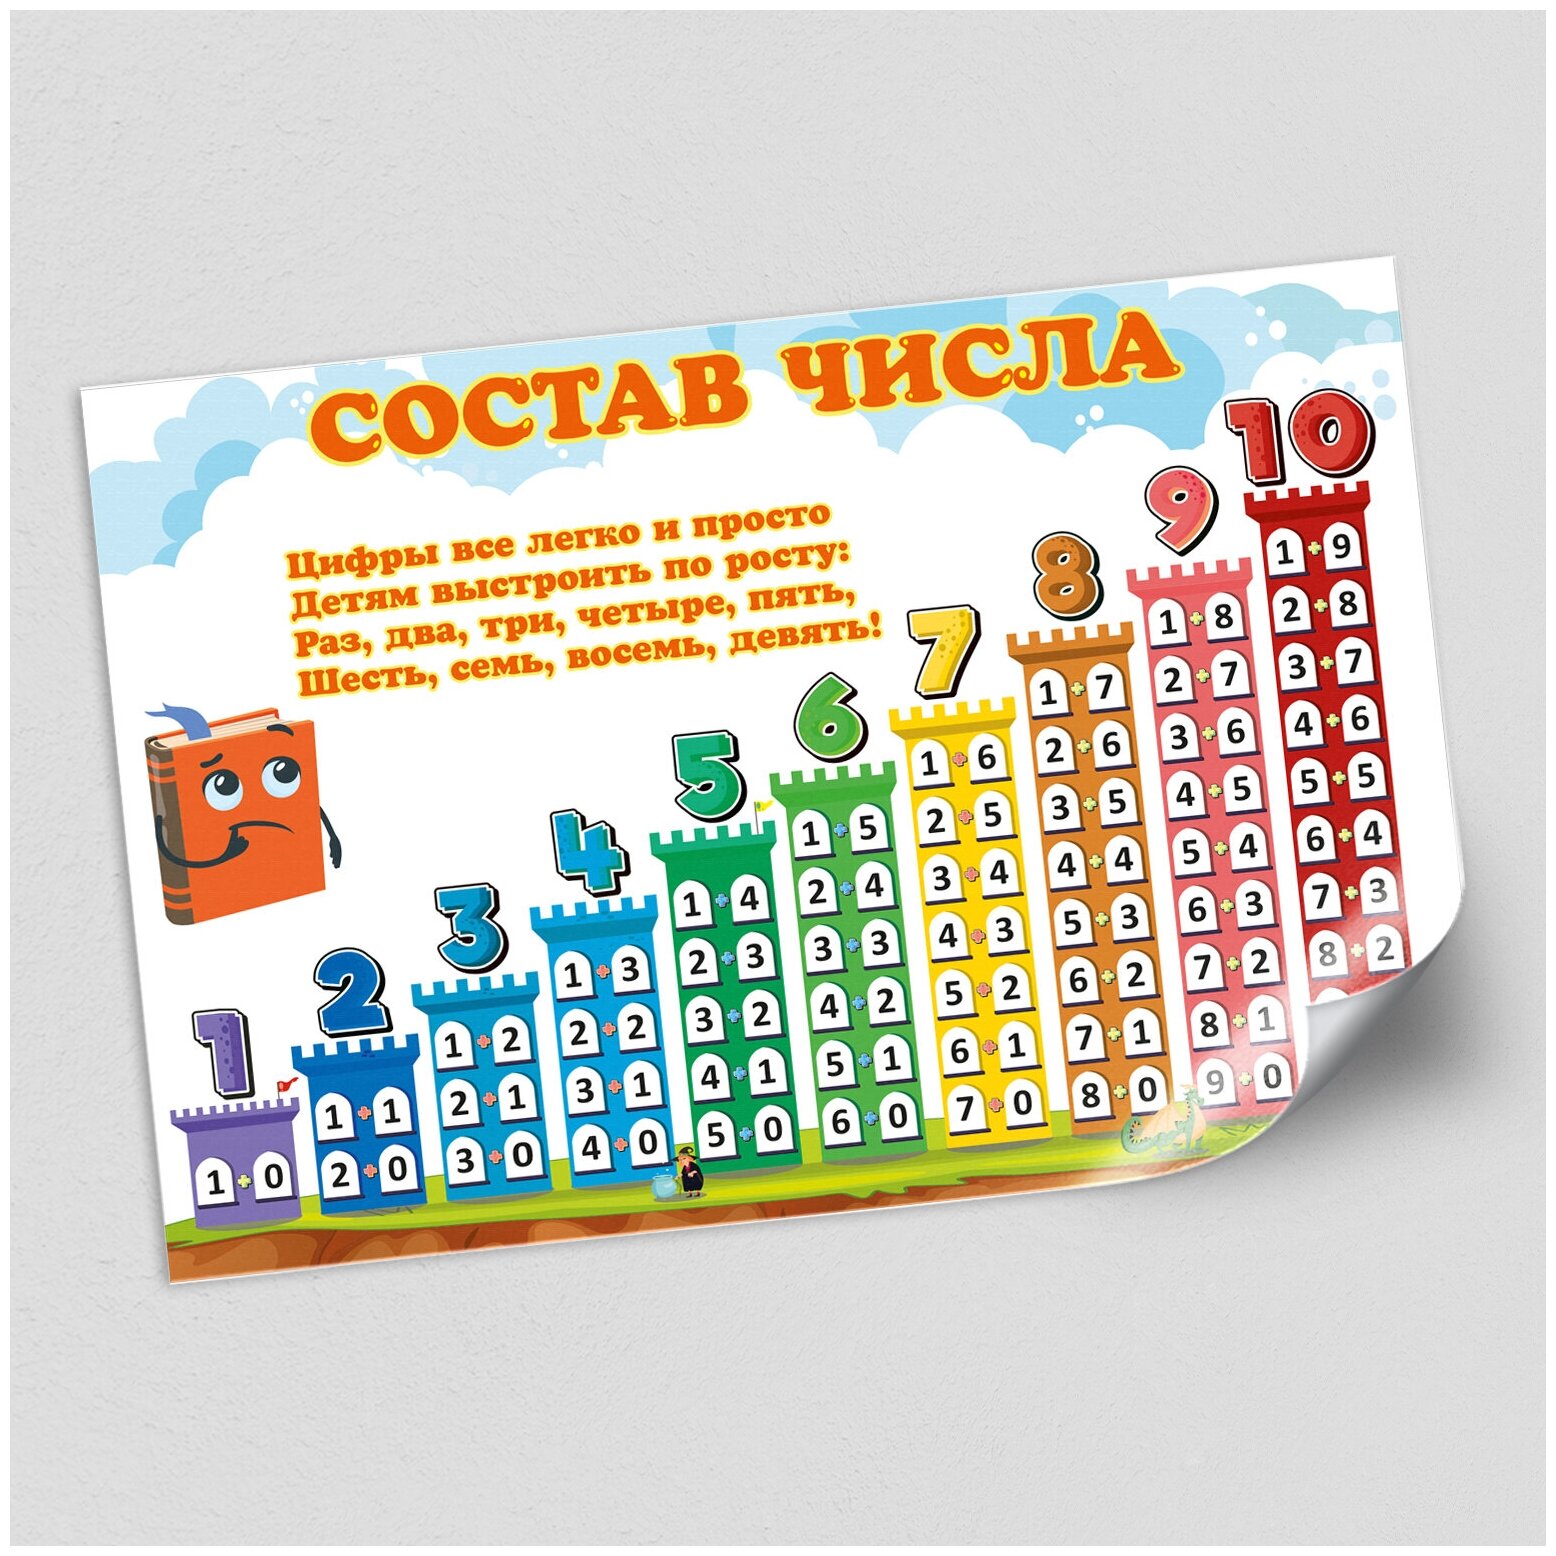 Обучающий плакат "Состав числа" для детей / А-0 (84x119 см.)